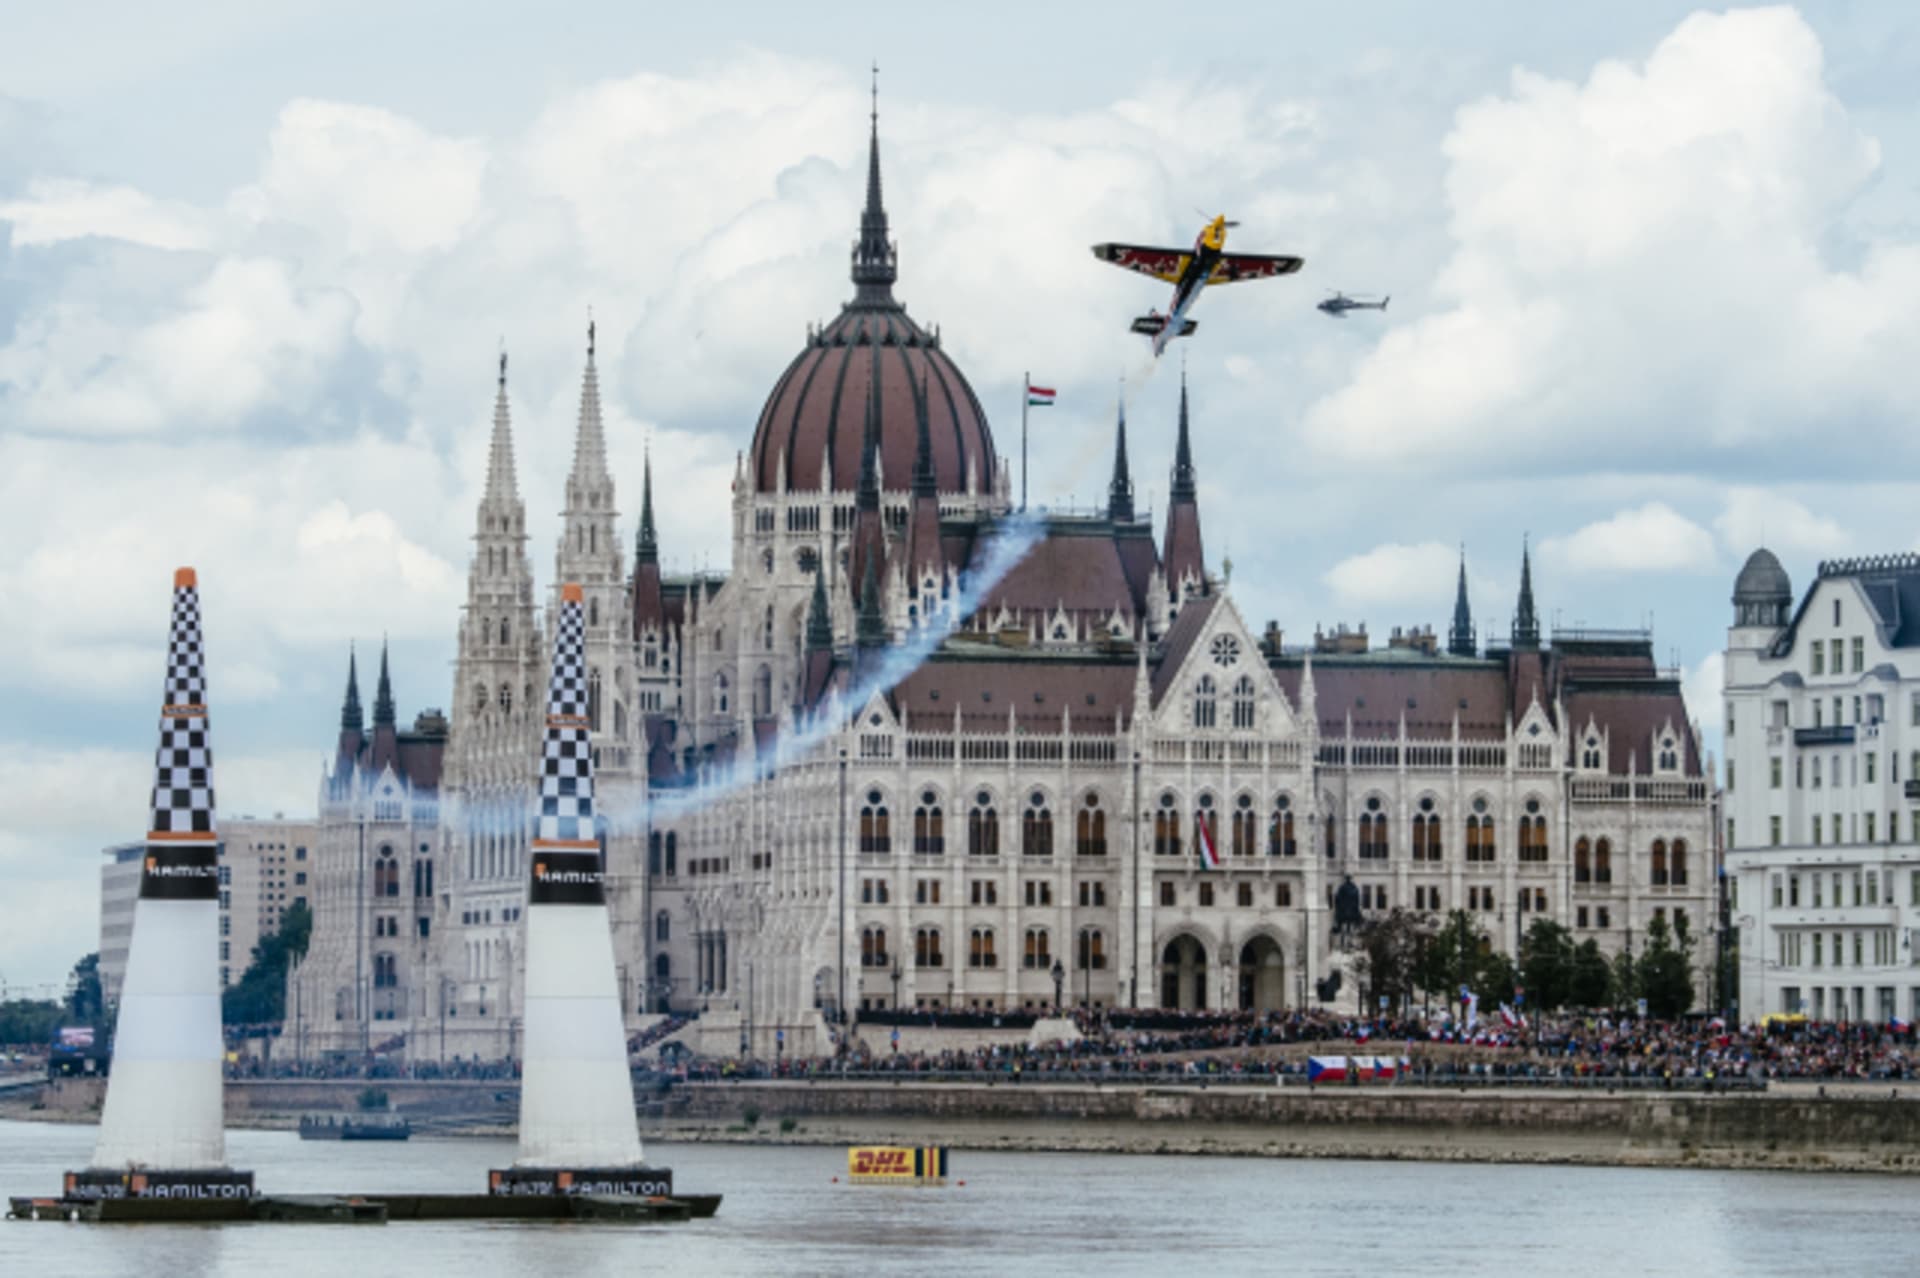 Možná nejhezčí panorama v seriálu Red Bull Air Race. Petr Kopfstein prolétává kolem maďarského parlamentu v Budapešti.